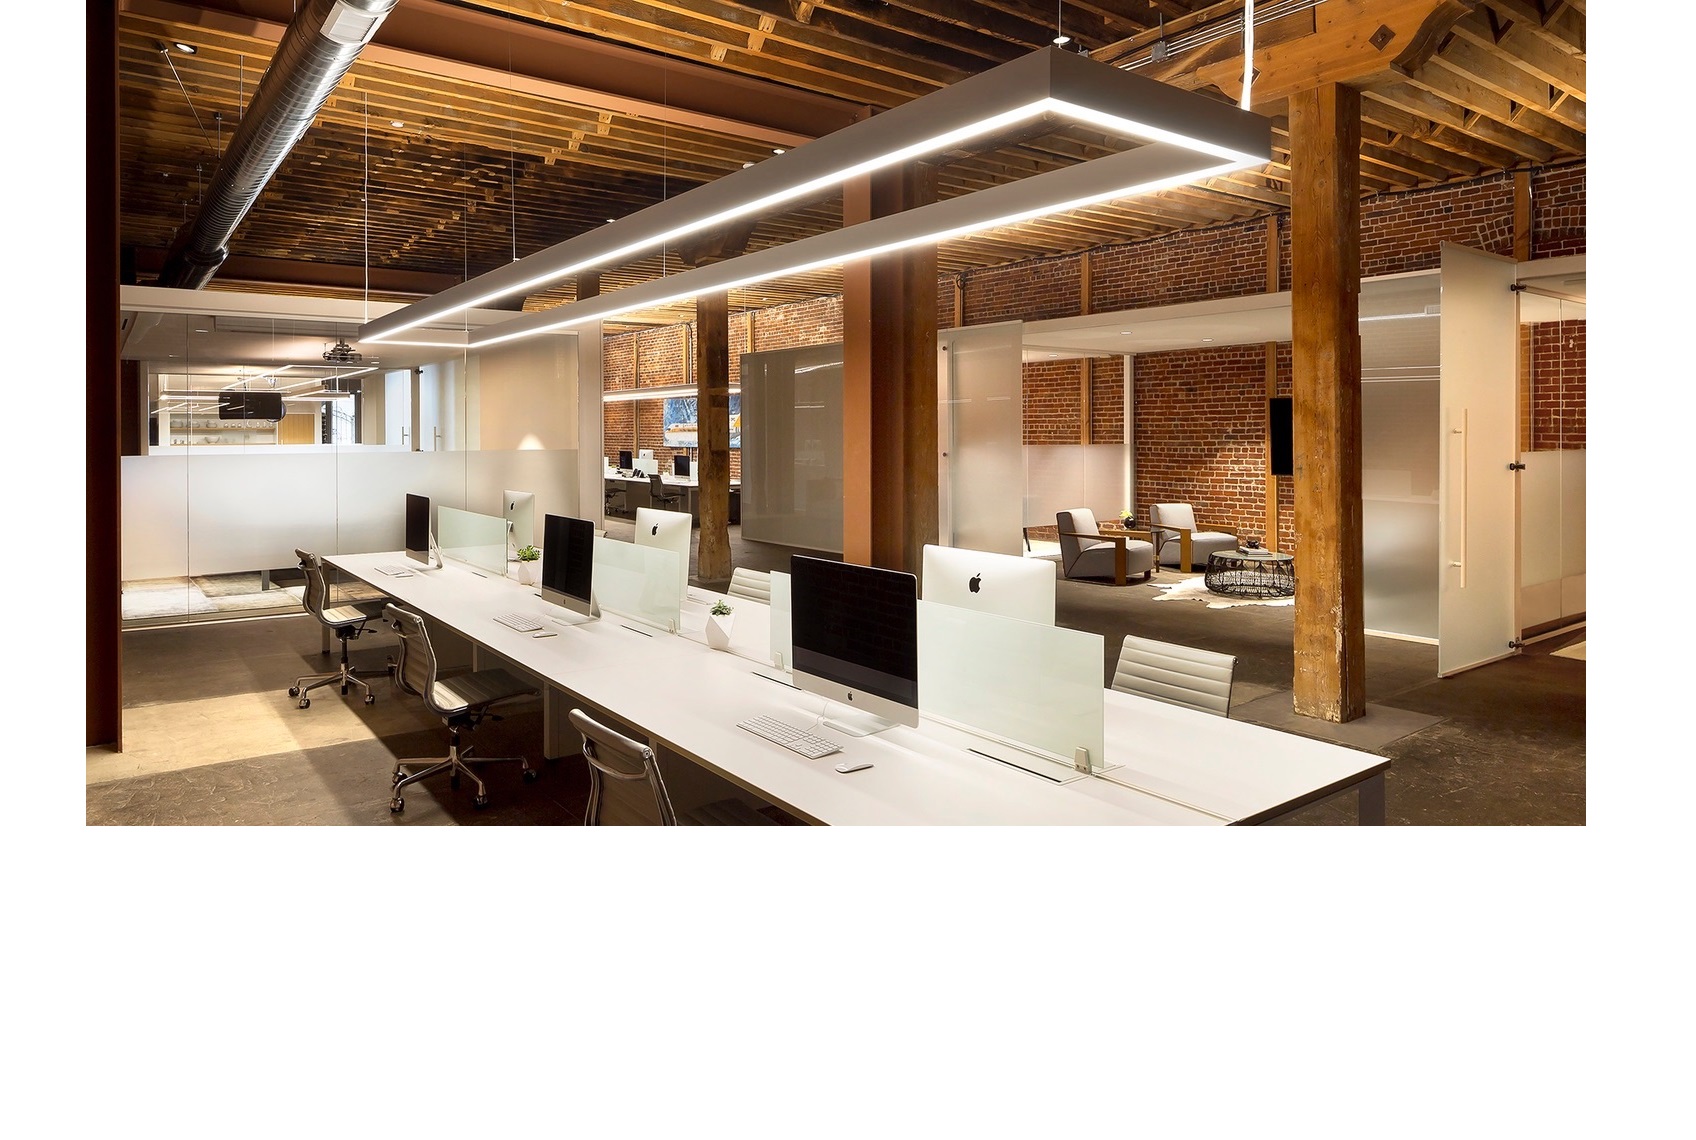 اصول نورپردازی دفتر کار + اهمیت و مزایای آن در محیط های اداری